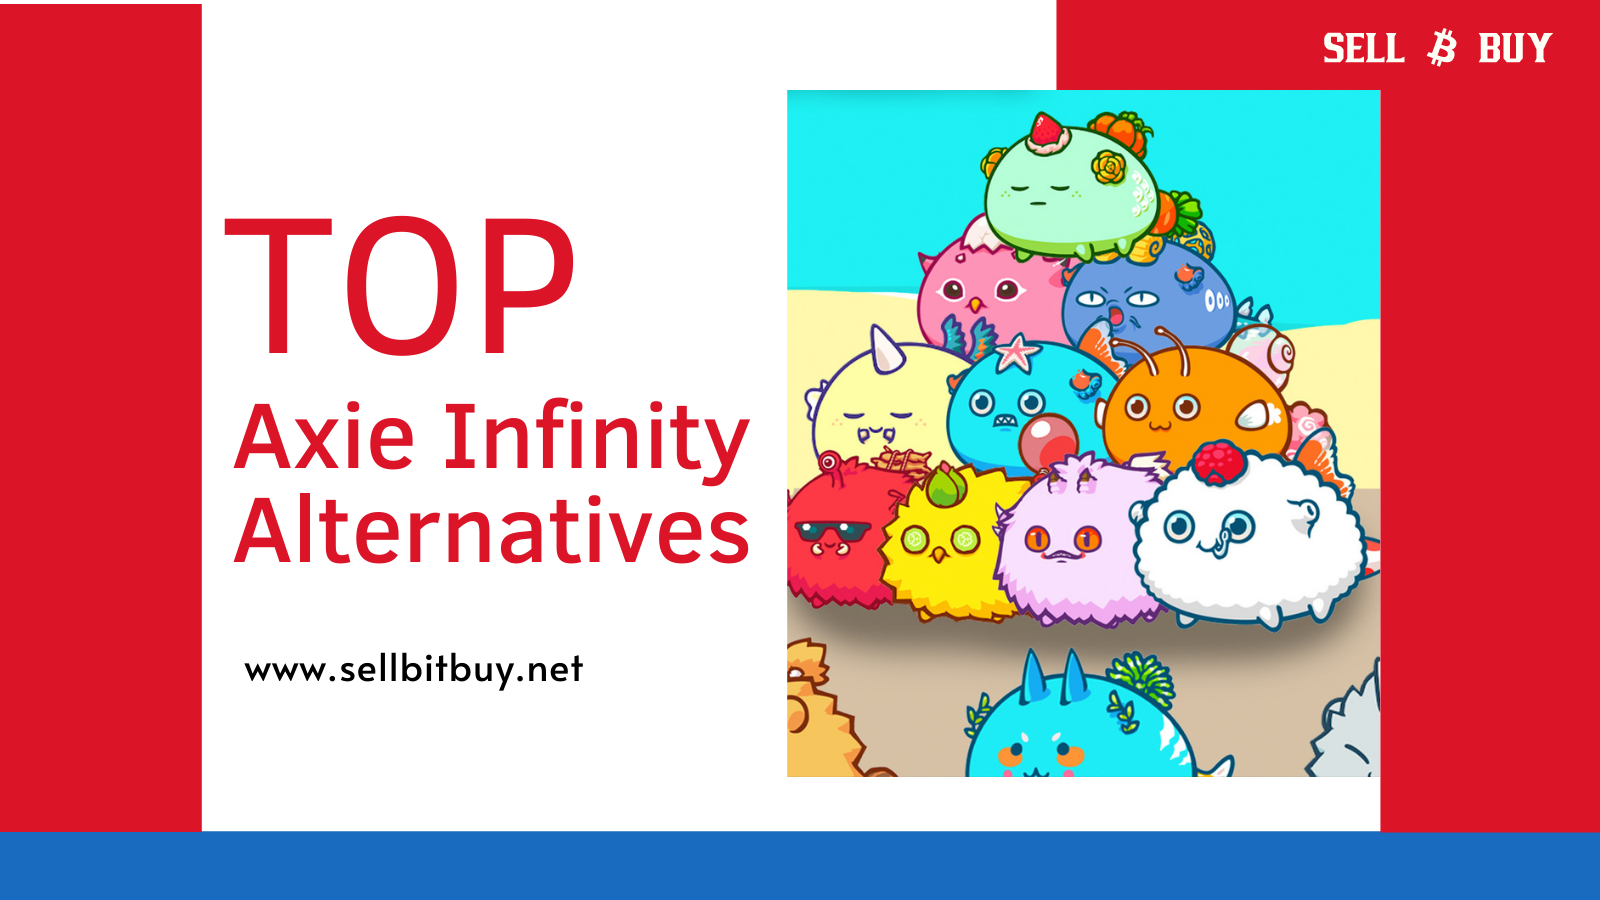 Top Axie Infinity Alternatives